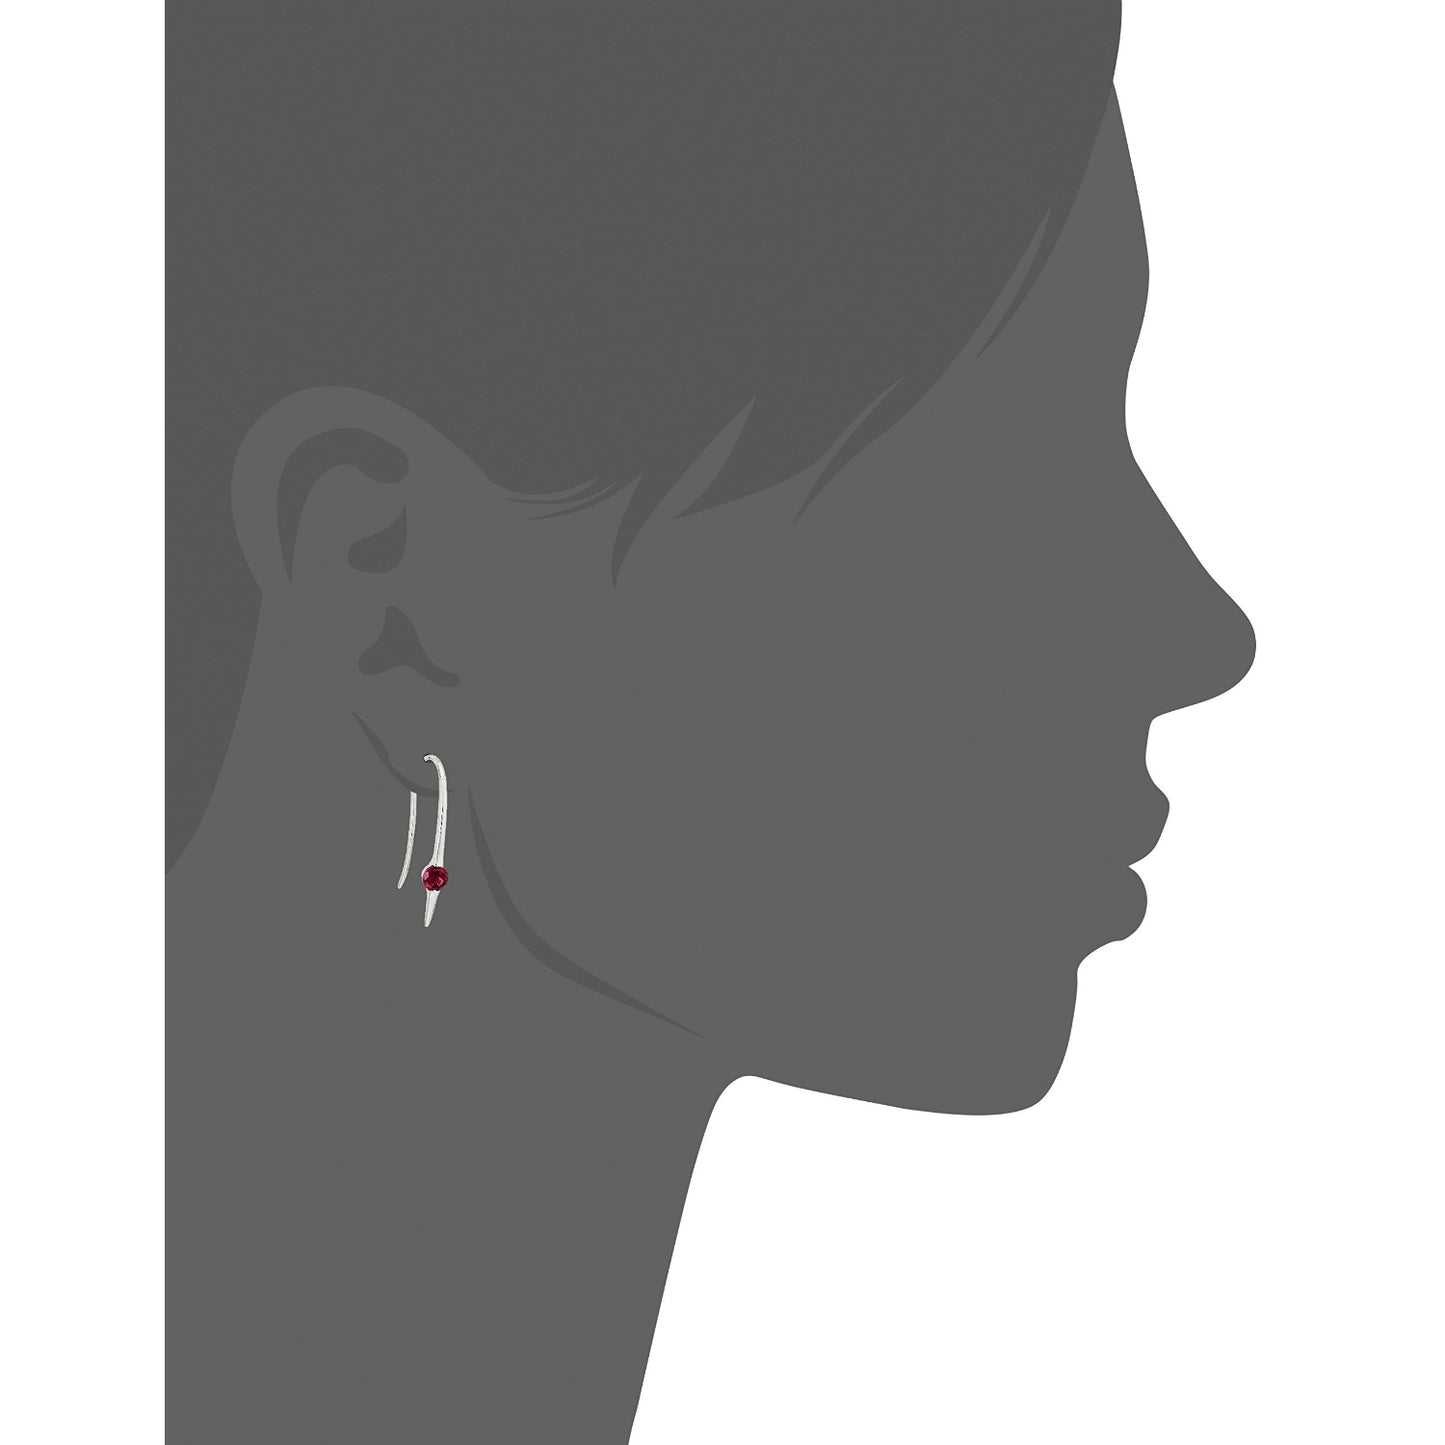 Sterling Silver Rhodolite Wire Drop Earrings - pinctore